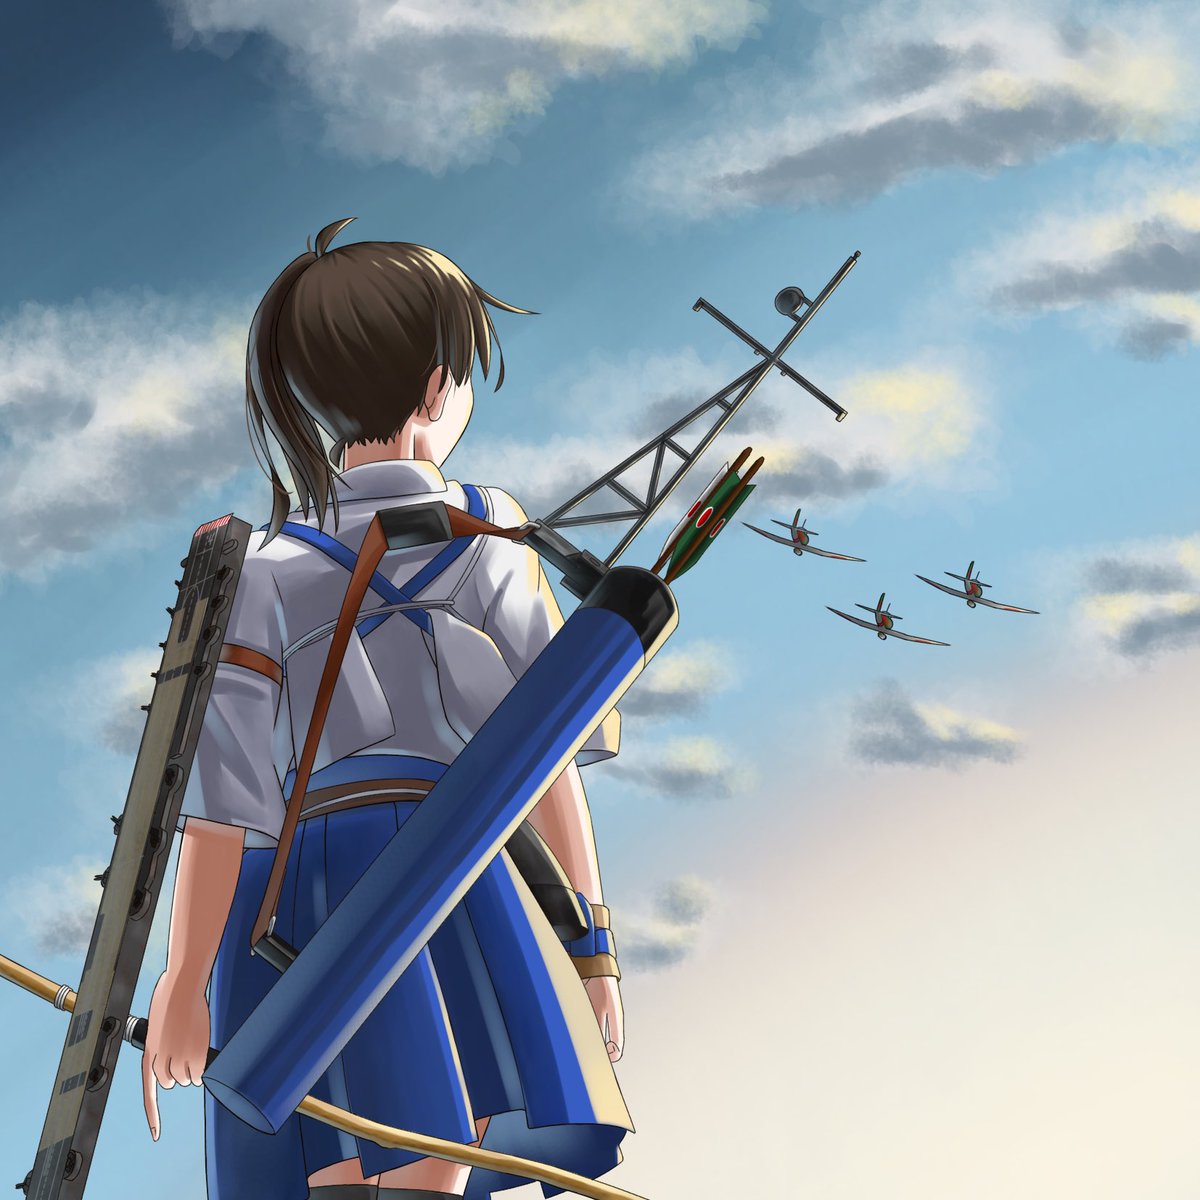 九七艦攻を見送る加賀さんを描きました。
毎回背景に苦戦してる気がする
#艦これ 
#加賀